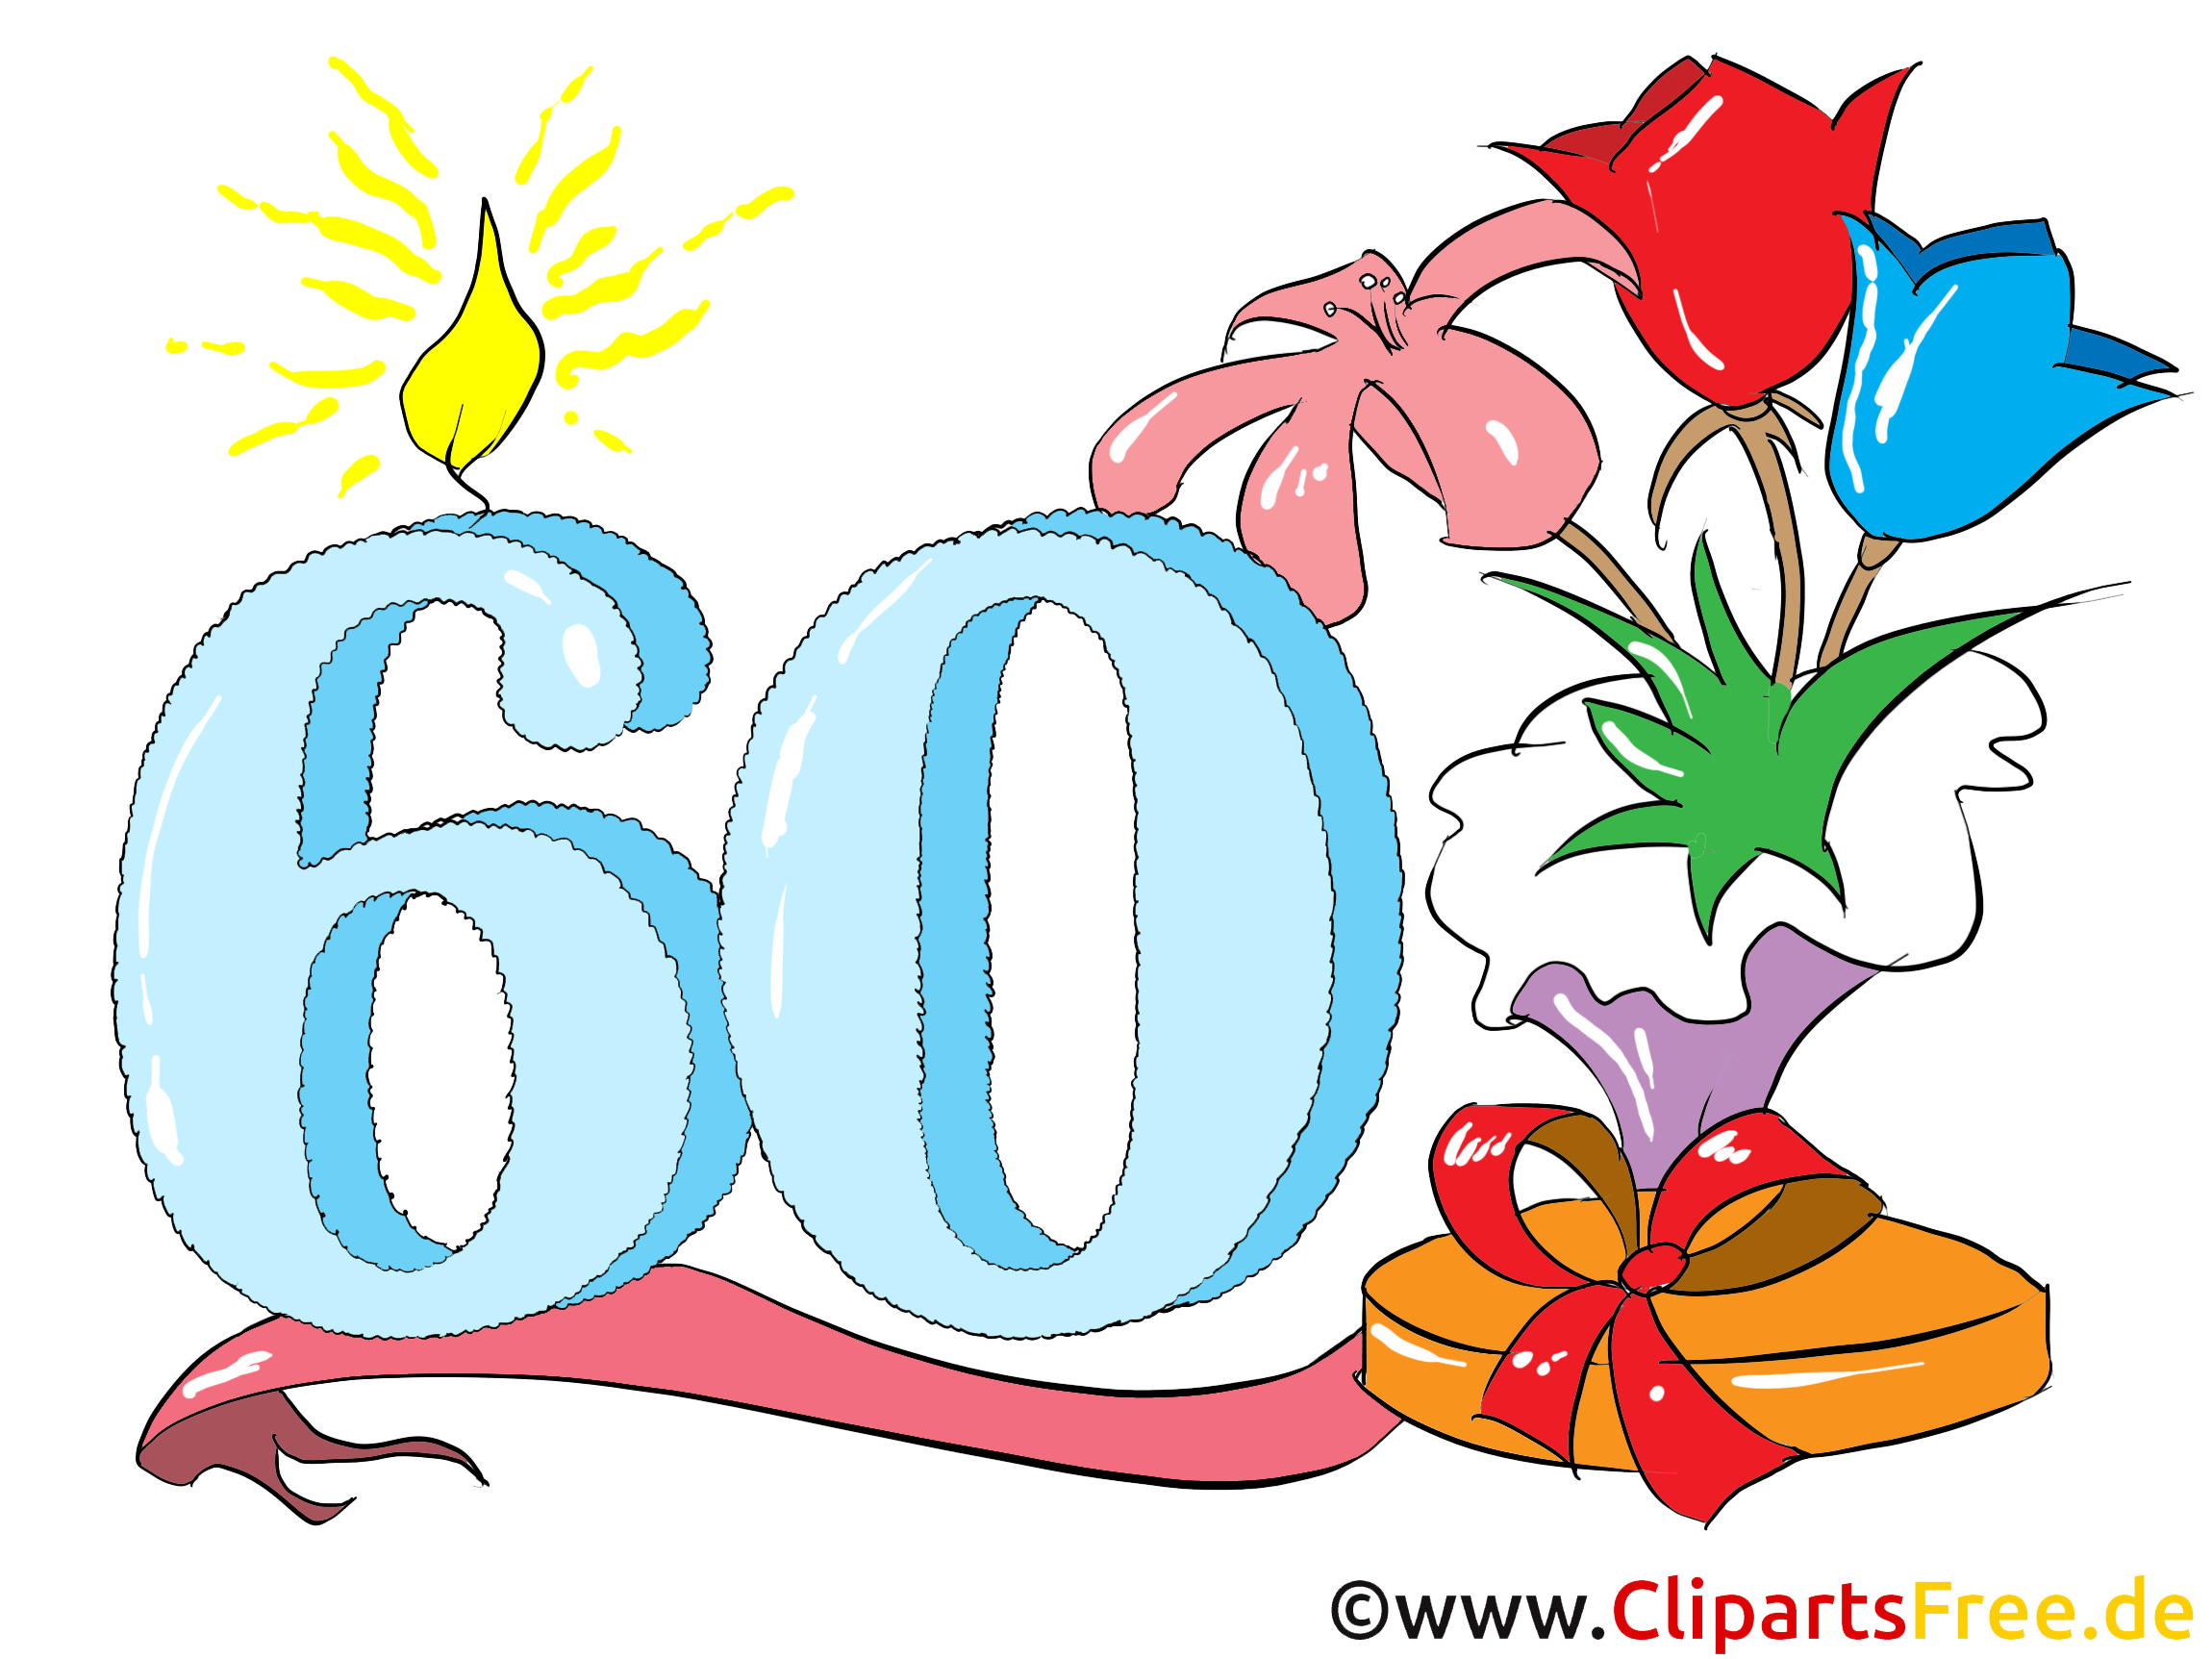 Zum 60. Geburtstag Clipart, Glückwunsch, Einladung bei Whatsapp Bilder Zum 60 Geburtstag